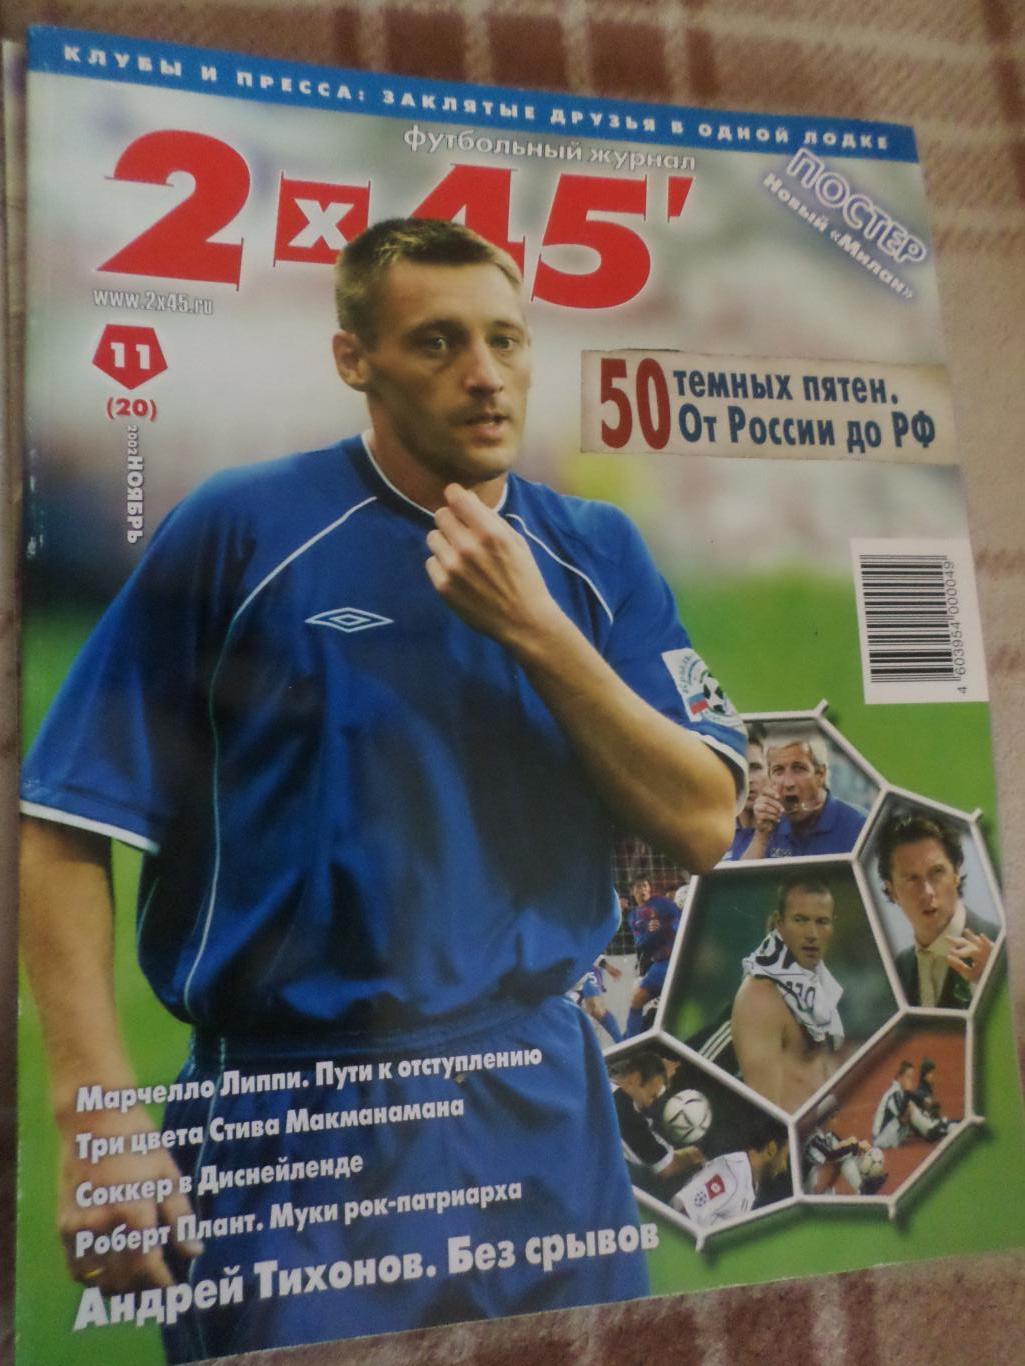 журнал Футбол 2 х 45 № 11 2002 г